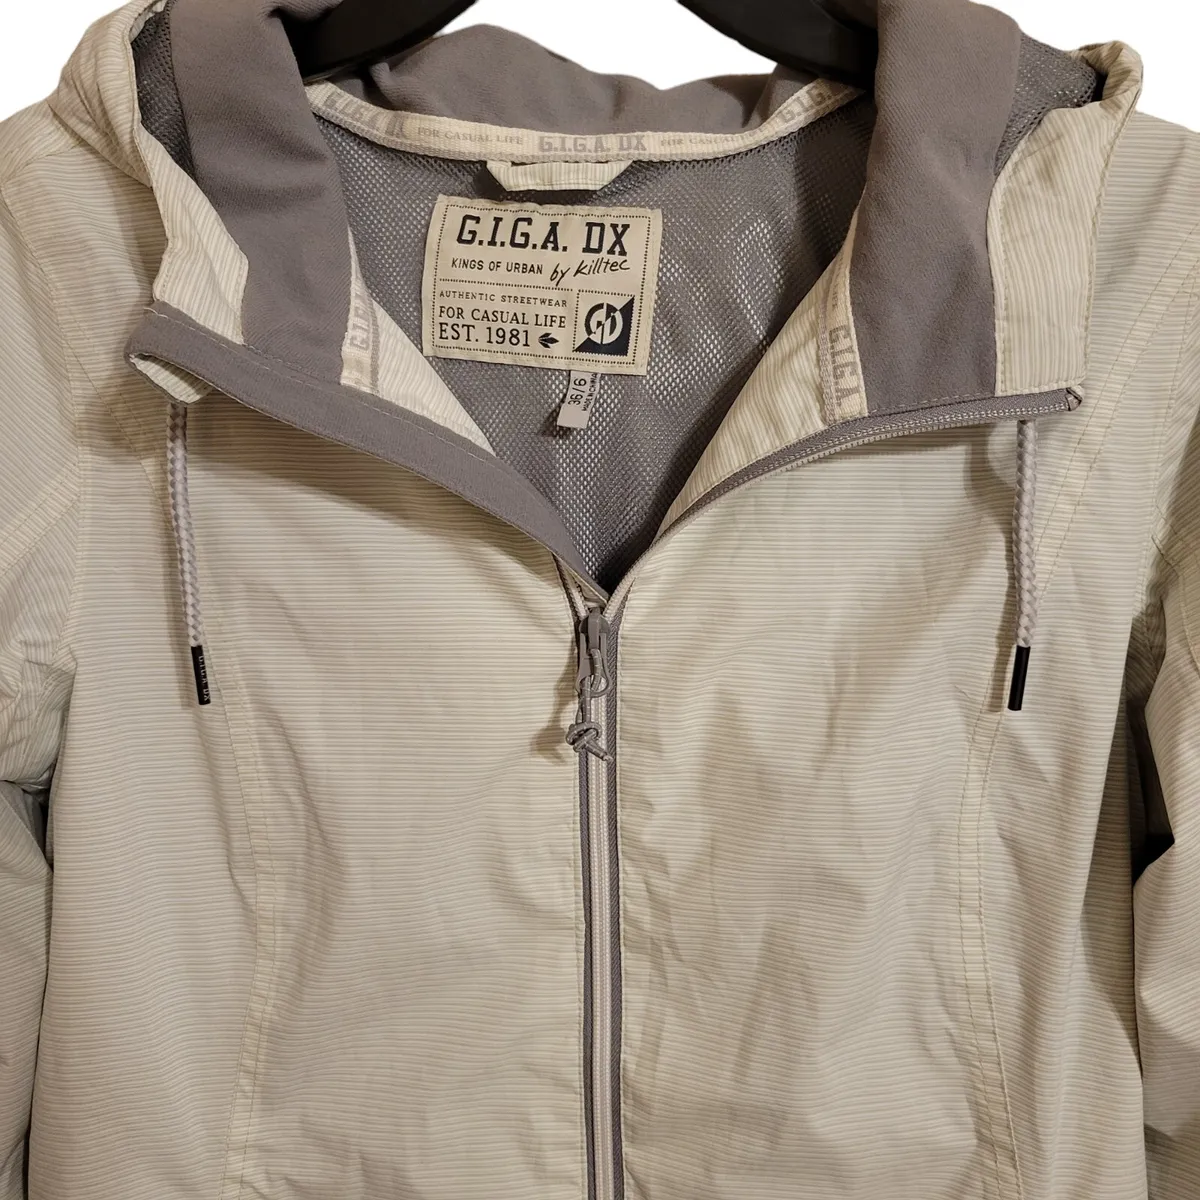 G.I.G.A DX By Killtec Sz 36/6 Off White Gray Striped Streewear Jacket | eBay